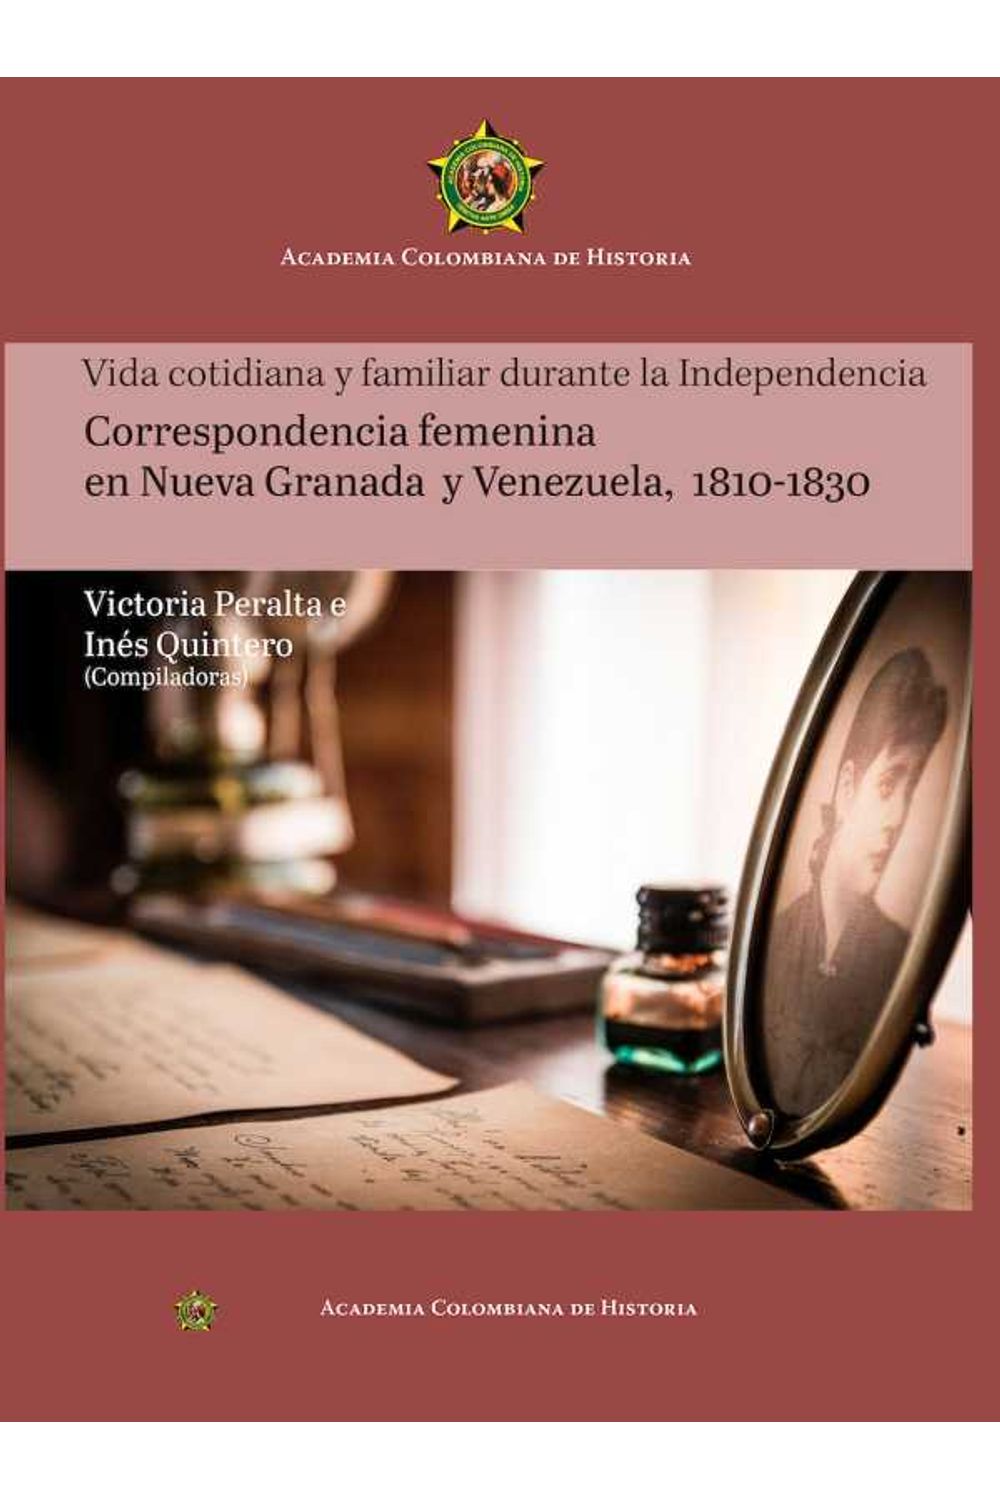 bw-vida-cotidiana-y-familiar-durante-la-independencia-academia-colombiana-de-historia-9789585154230